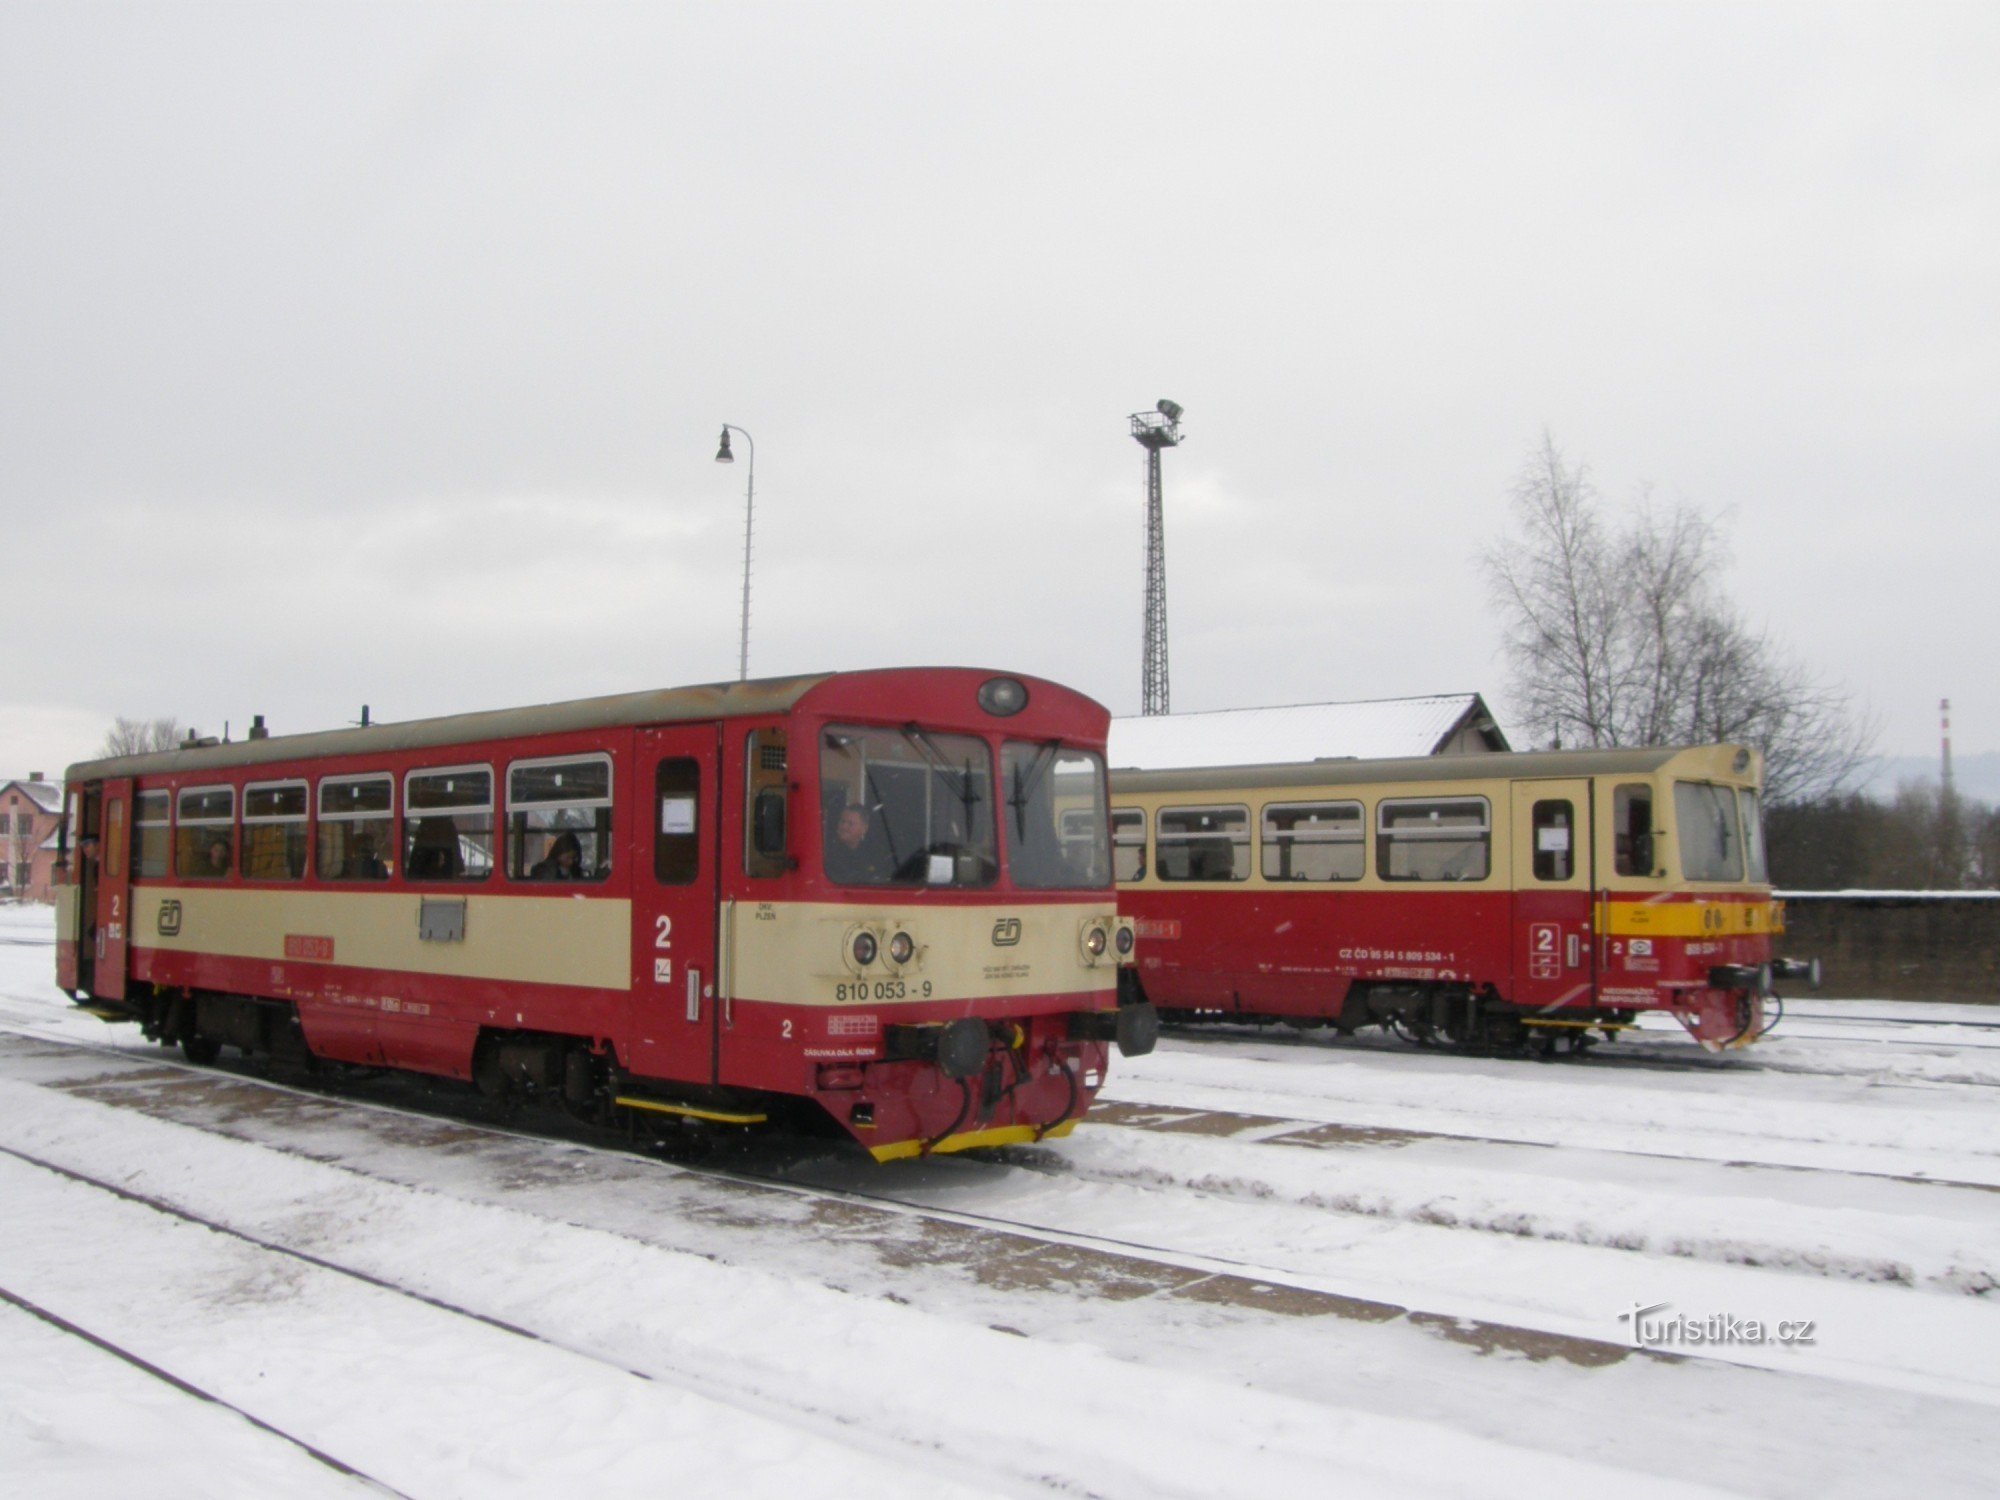 Потяги також відправляються з Волара в напрямку Черного Кржижа